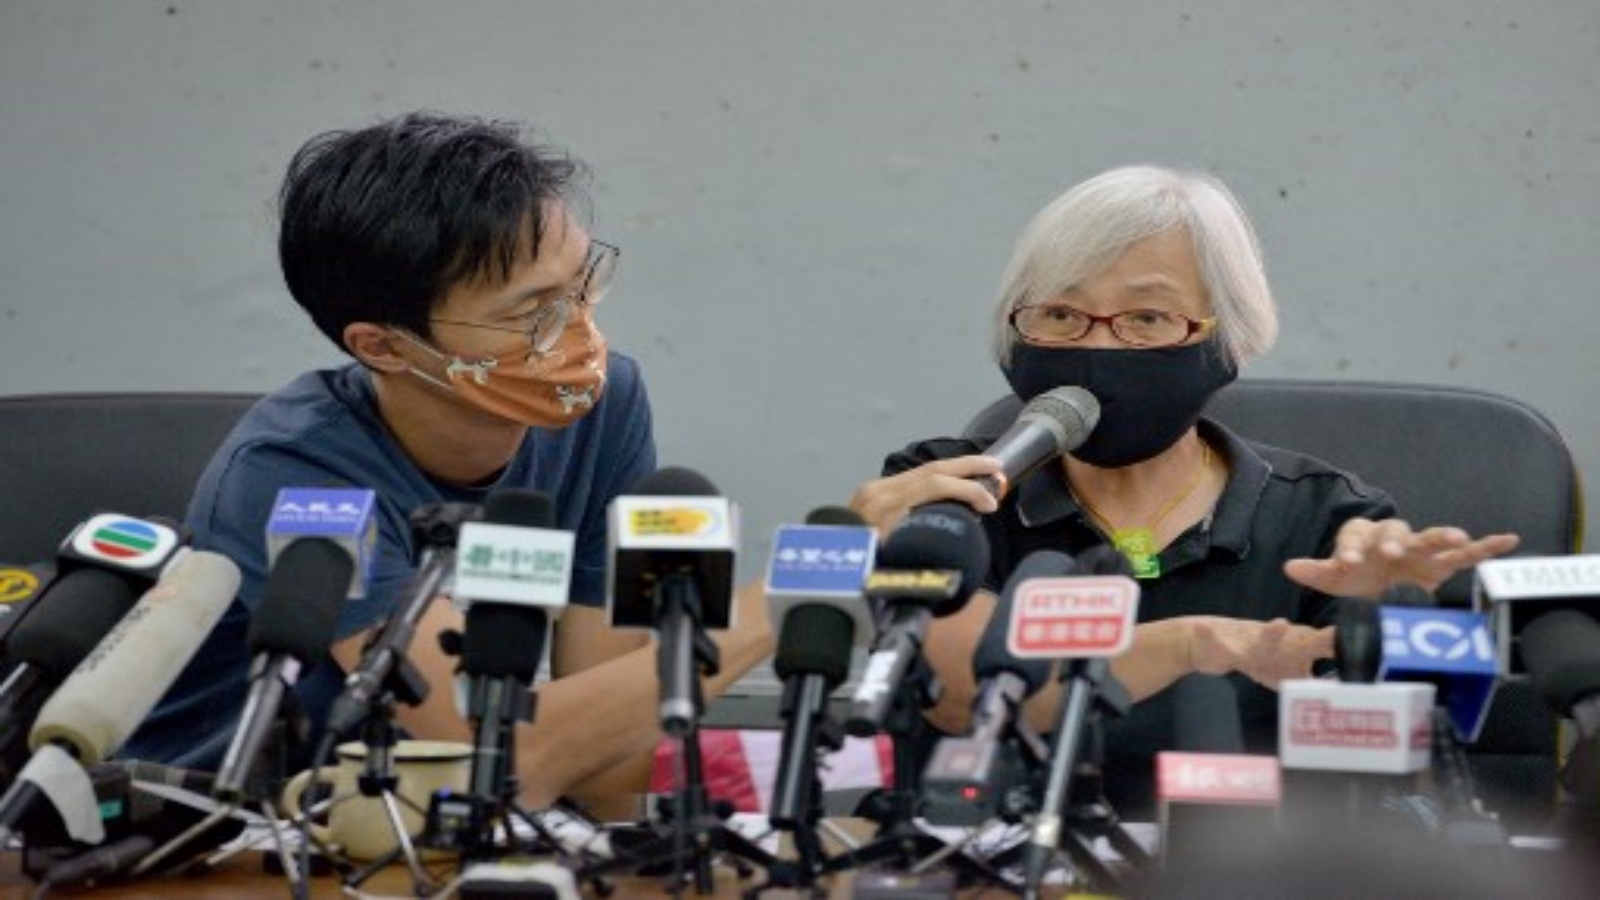 المتظاهرة المؤيدة للديمقراطية ألكسندرا وونغ البالغة من العمر 64 عامًا تتحدث إلى وسائل الإعلام مع مؤيدها إيدي تشو في مؤتمر صحفي في هونغ كونغ في 17 أكتوبر 2020